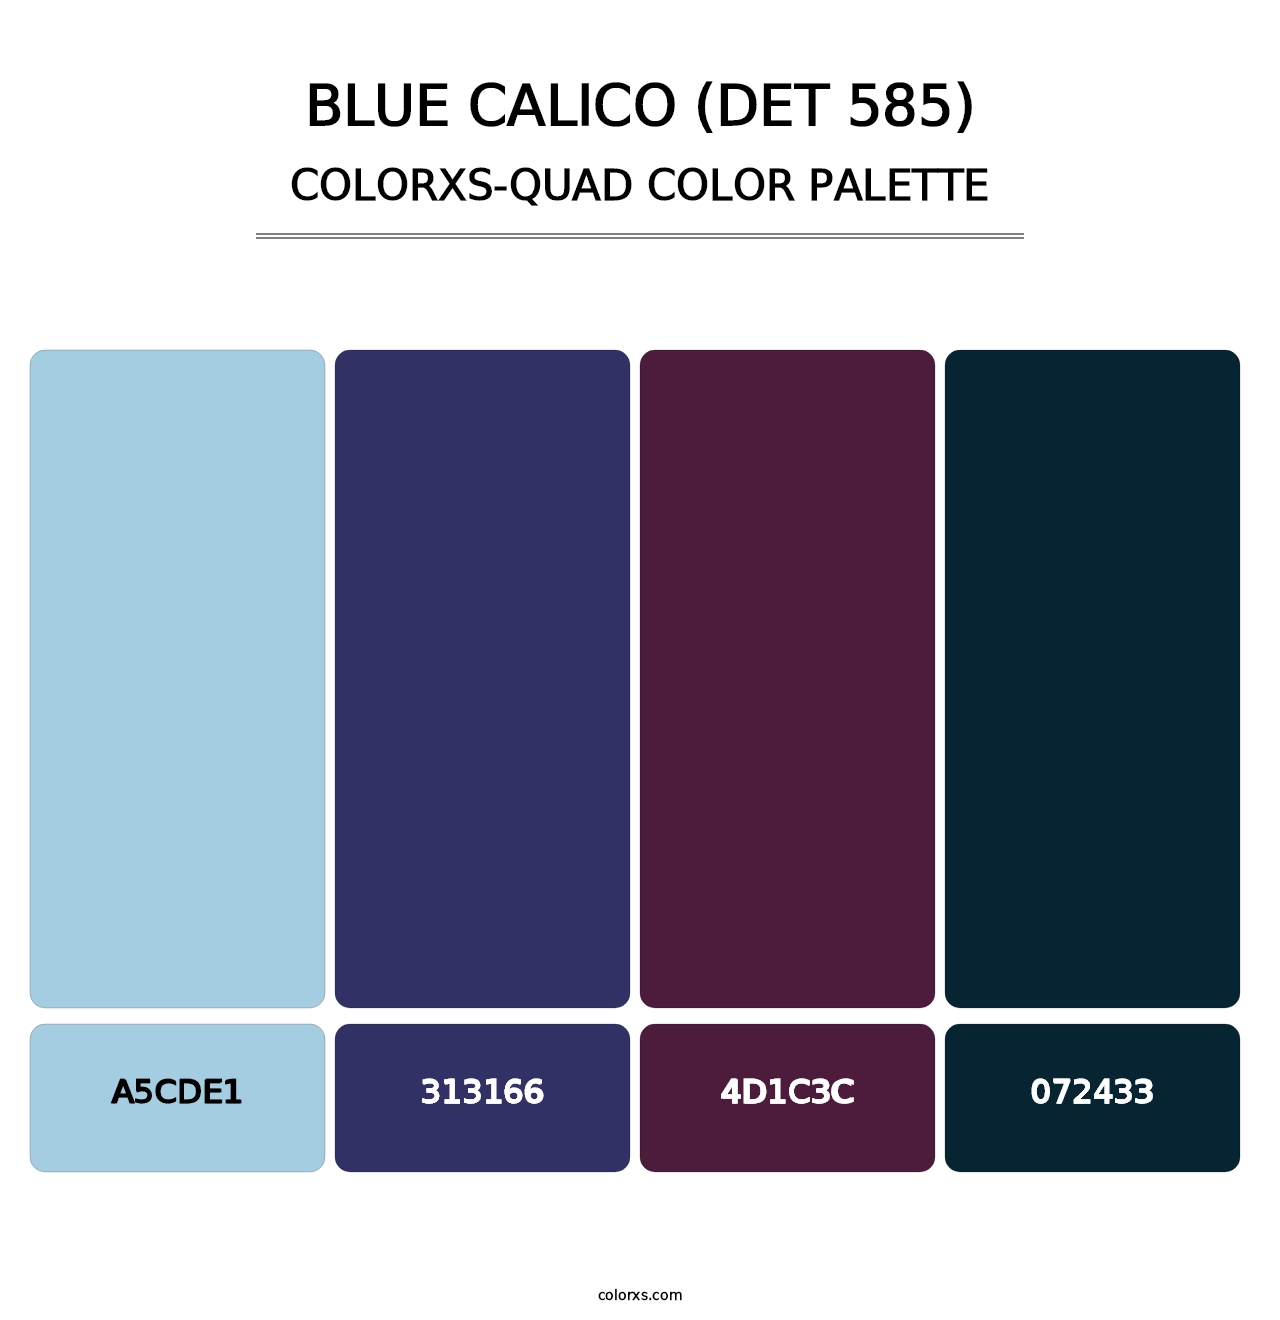 Blue Calico (DET 585) - Colorxs Quad Palette